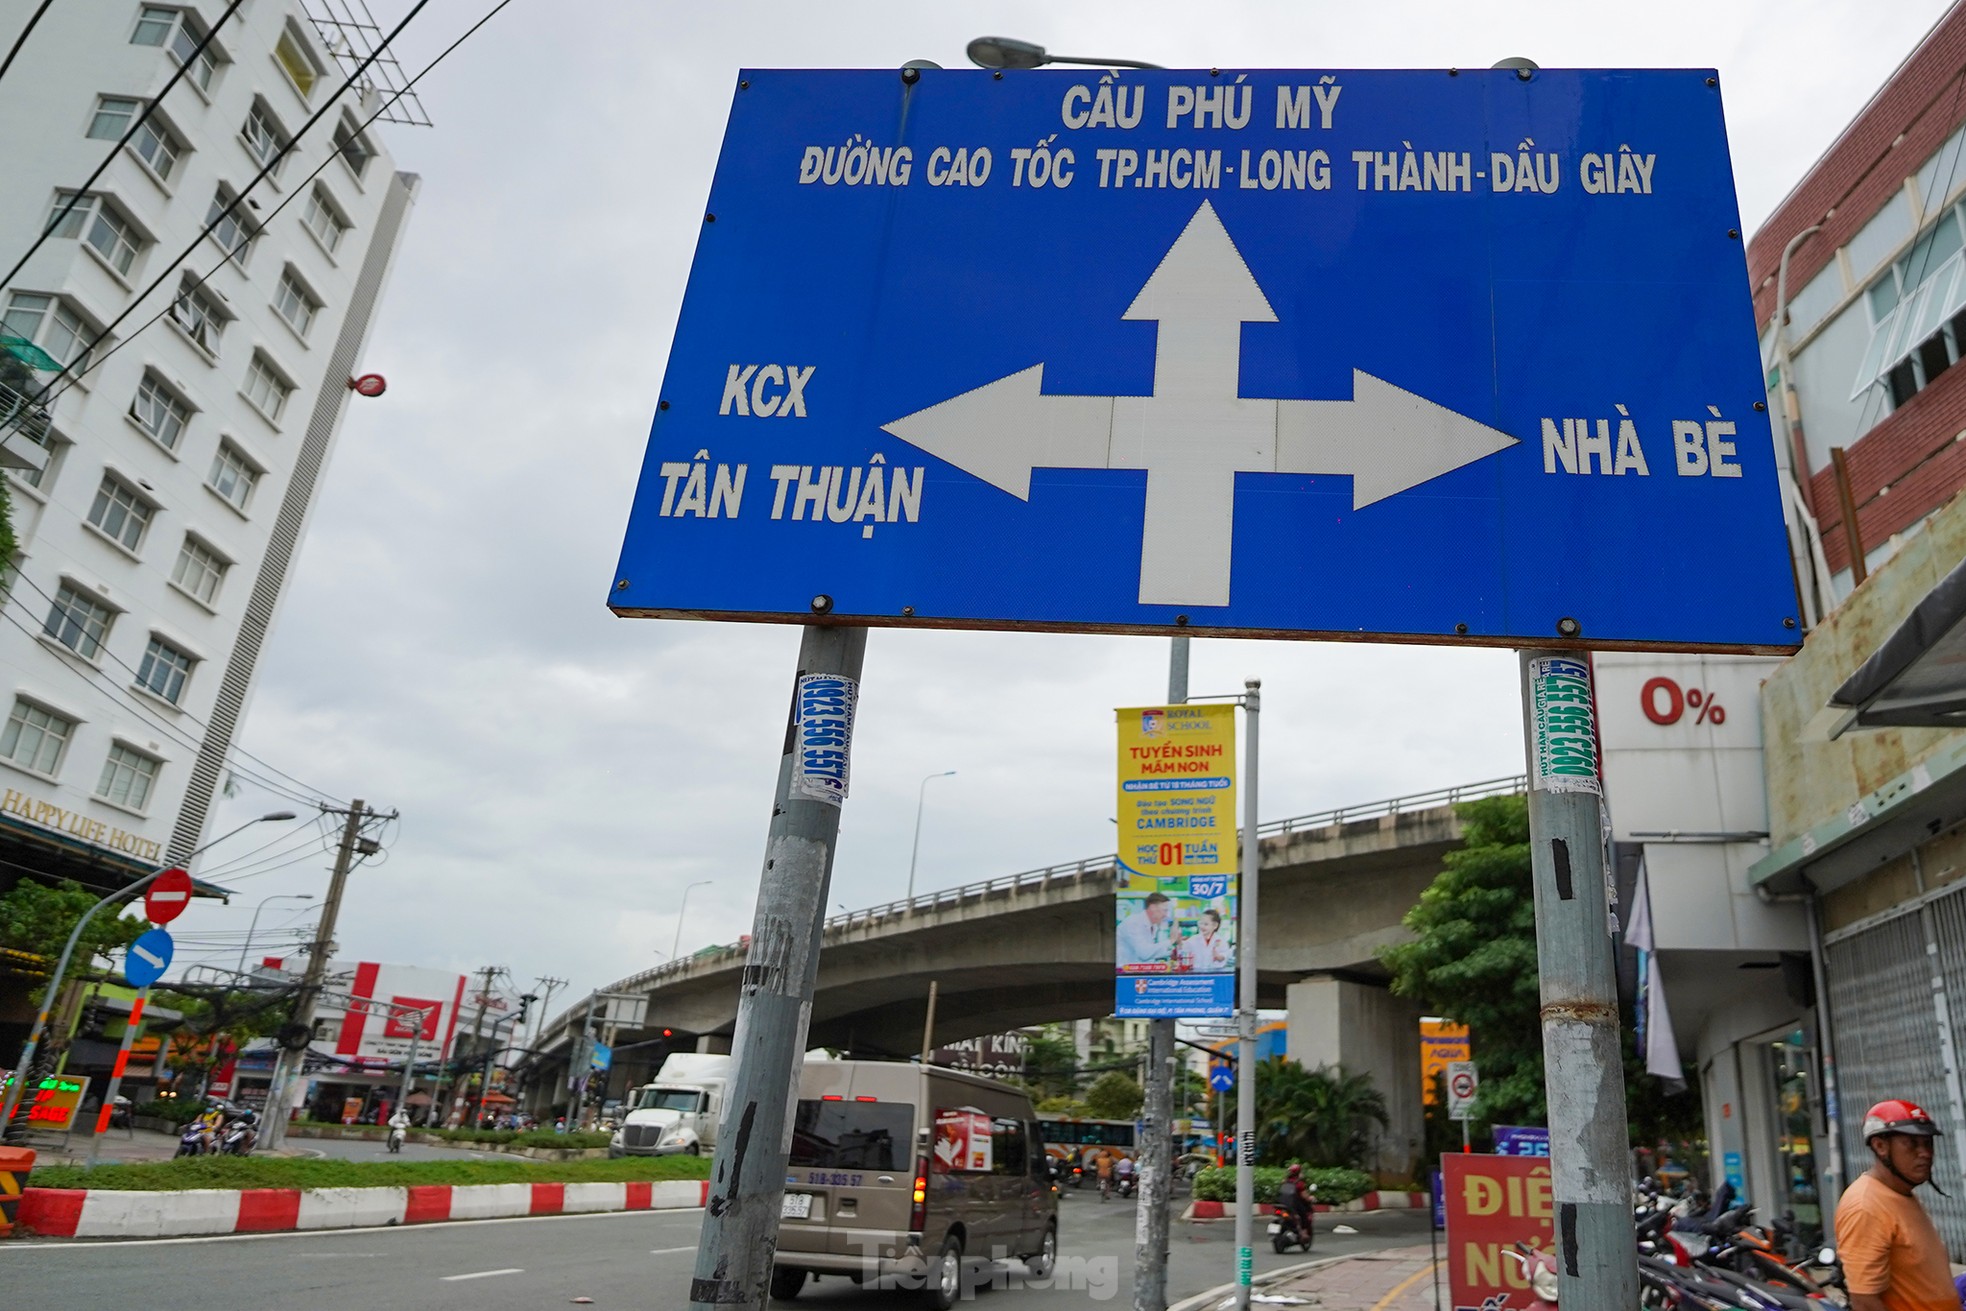 Cận cảnh đường dẫn cầu Phú Mỹ có 'cha đẻ' sai phạm đang bị xử lý - Ảnh 7.